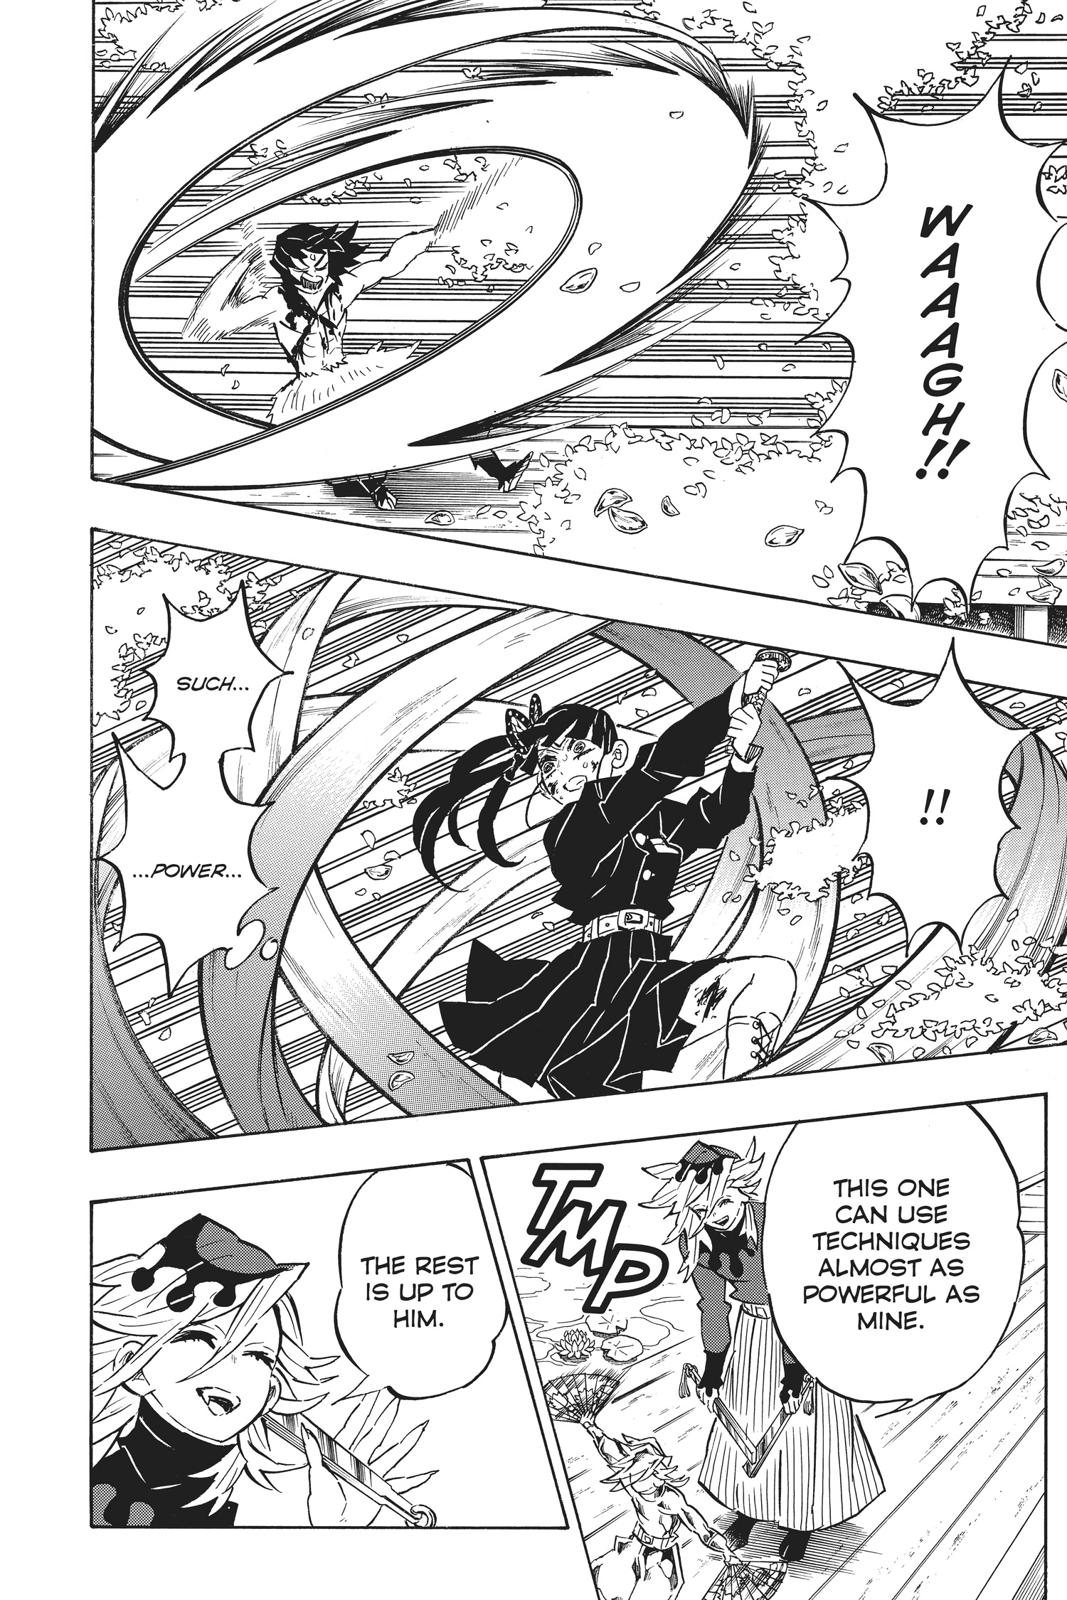 Demon Slayer Manga Manga Chapter - 161 - image 11